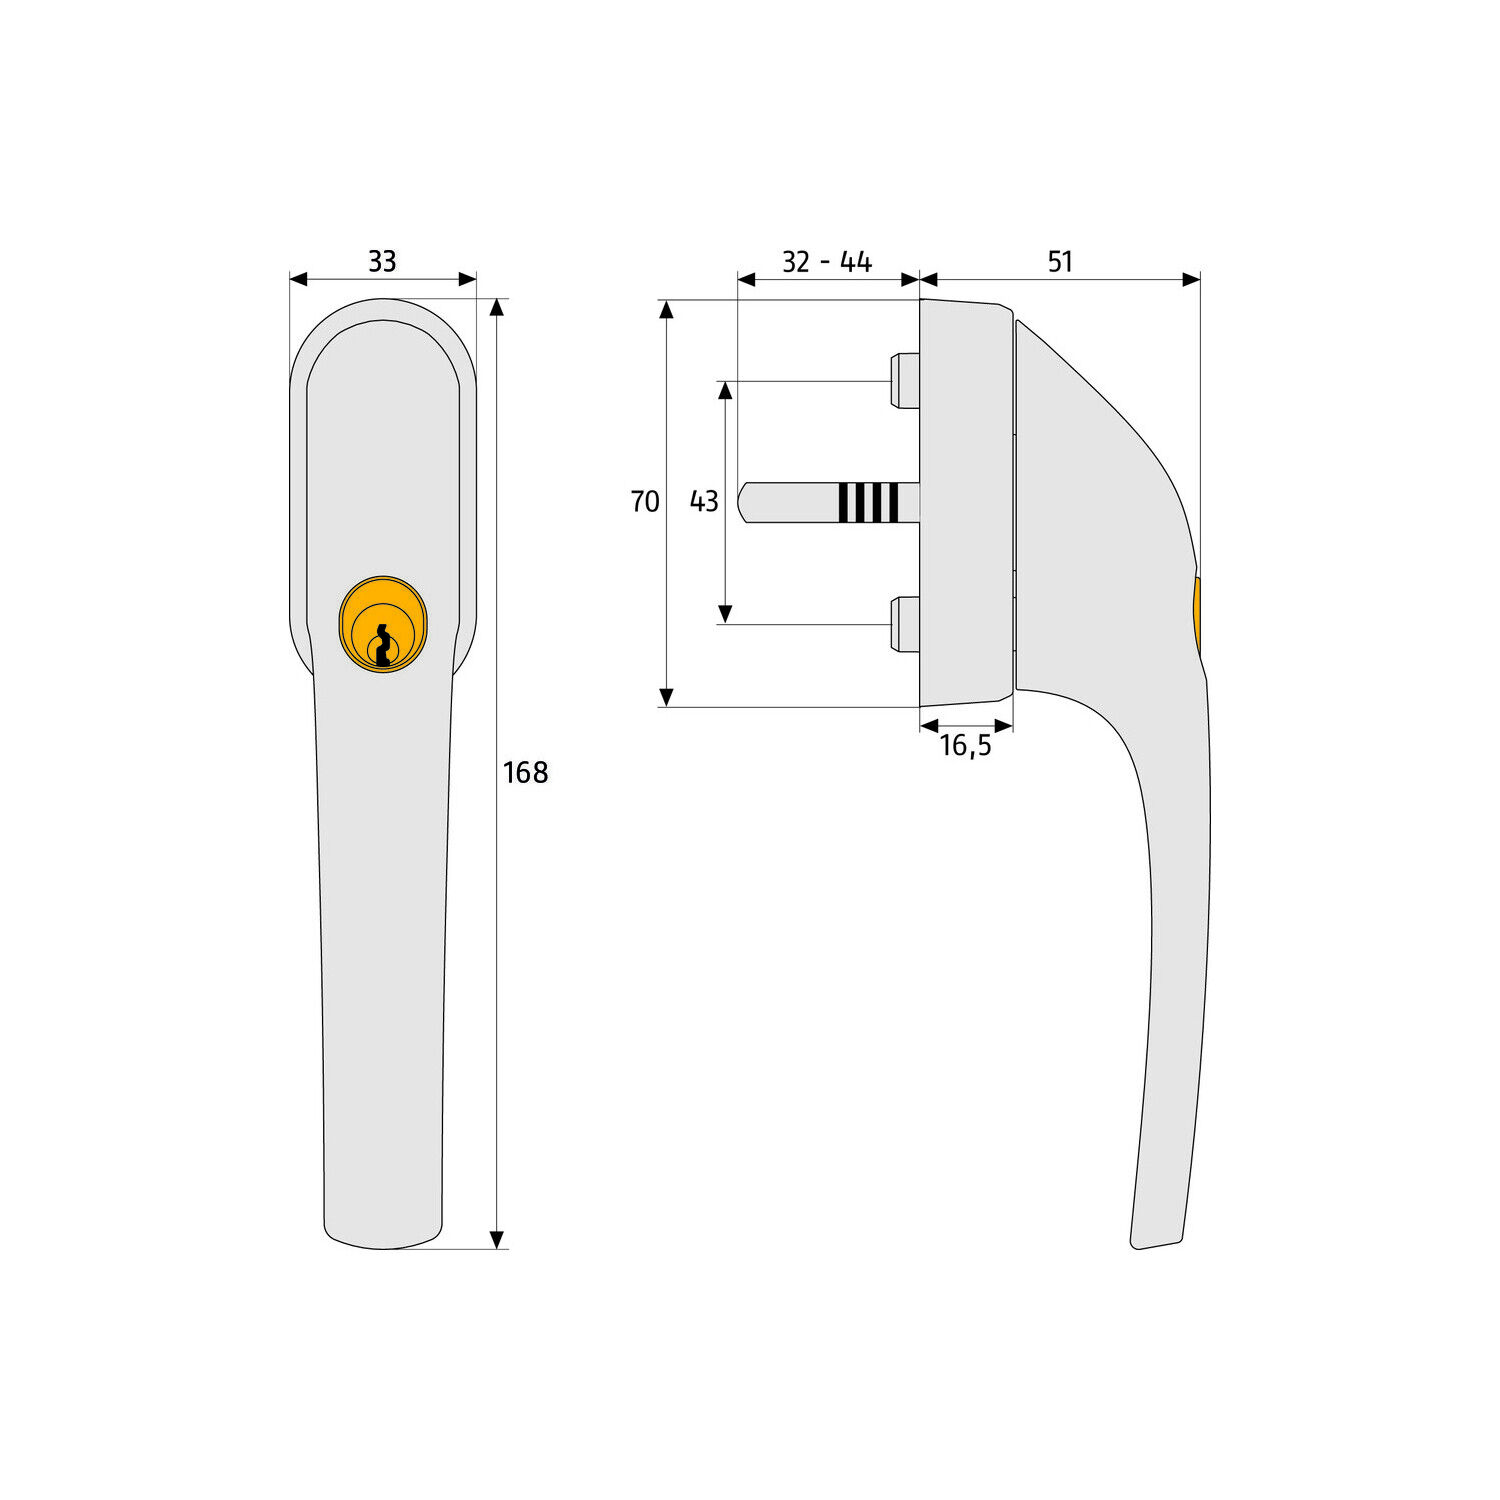 ABUS Fenstergriff FG300 abschließbar inklusive 2 Schlüssel Weiß 32 - 44 mm